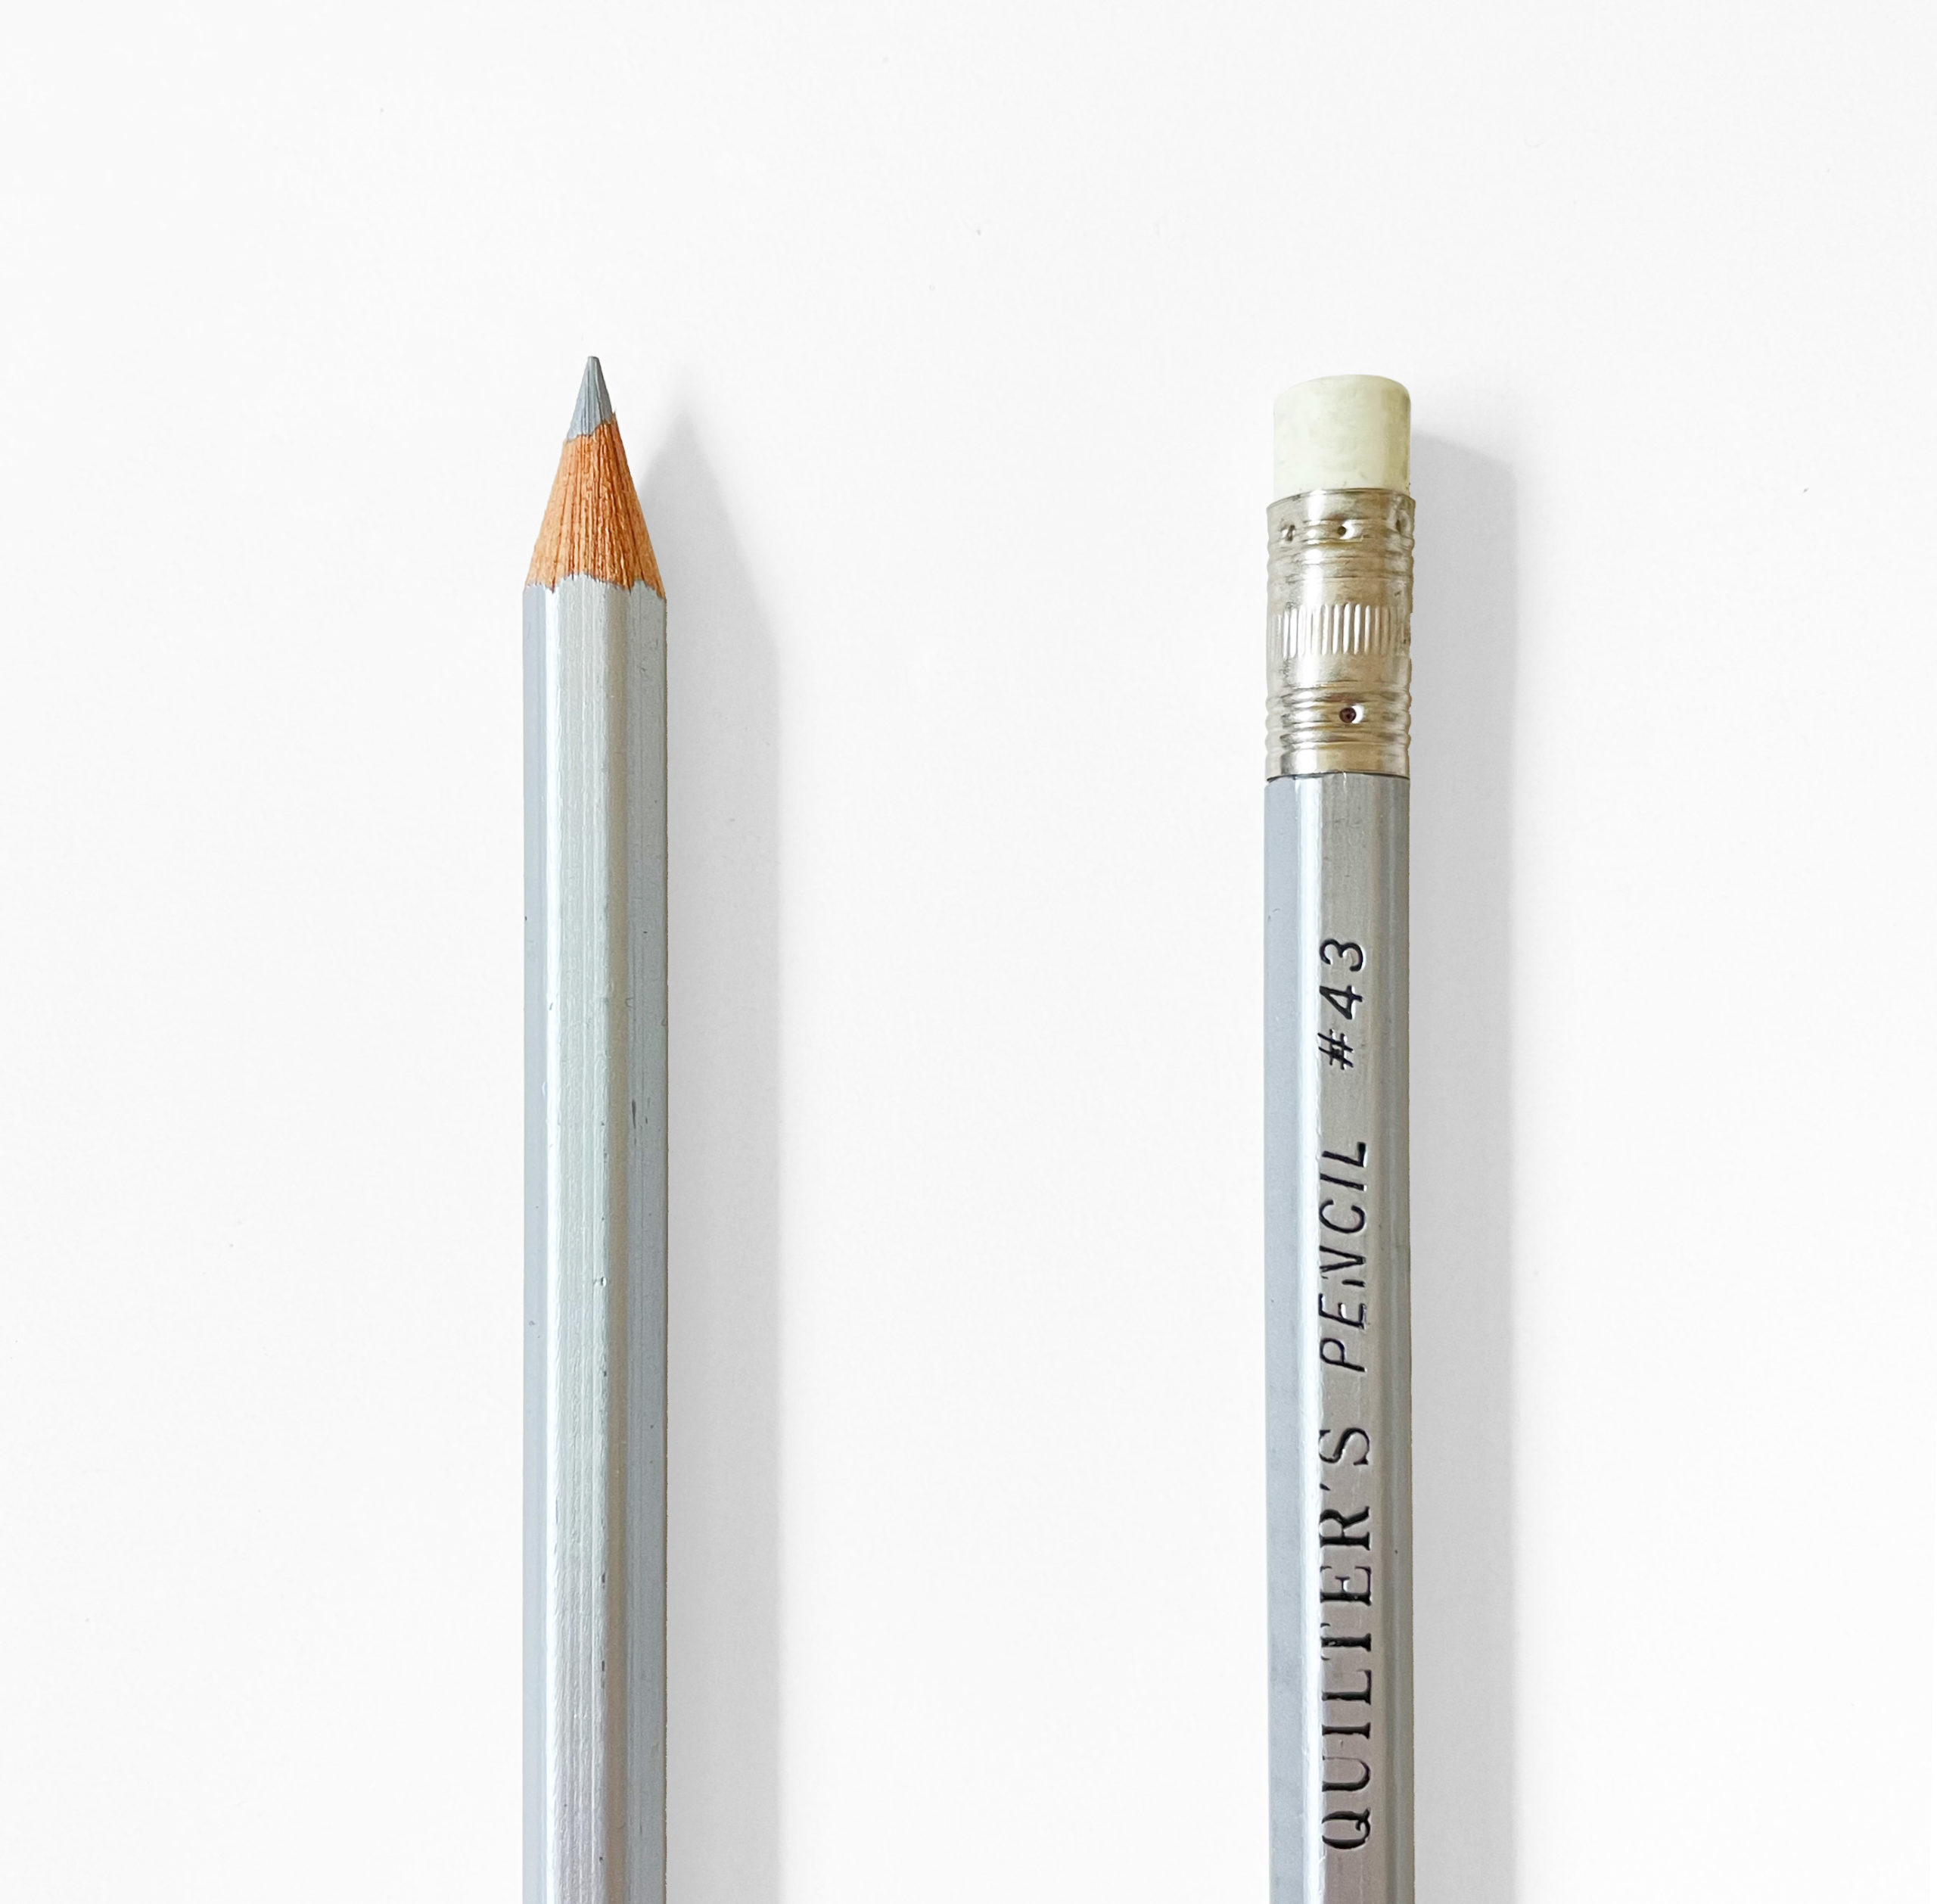 General's Quilter's pencil in silver - Maydel